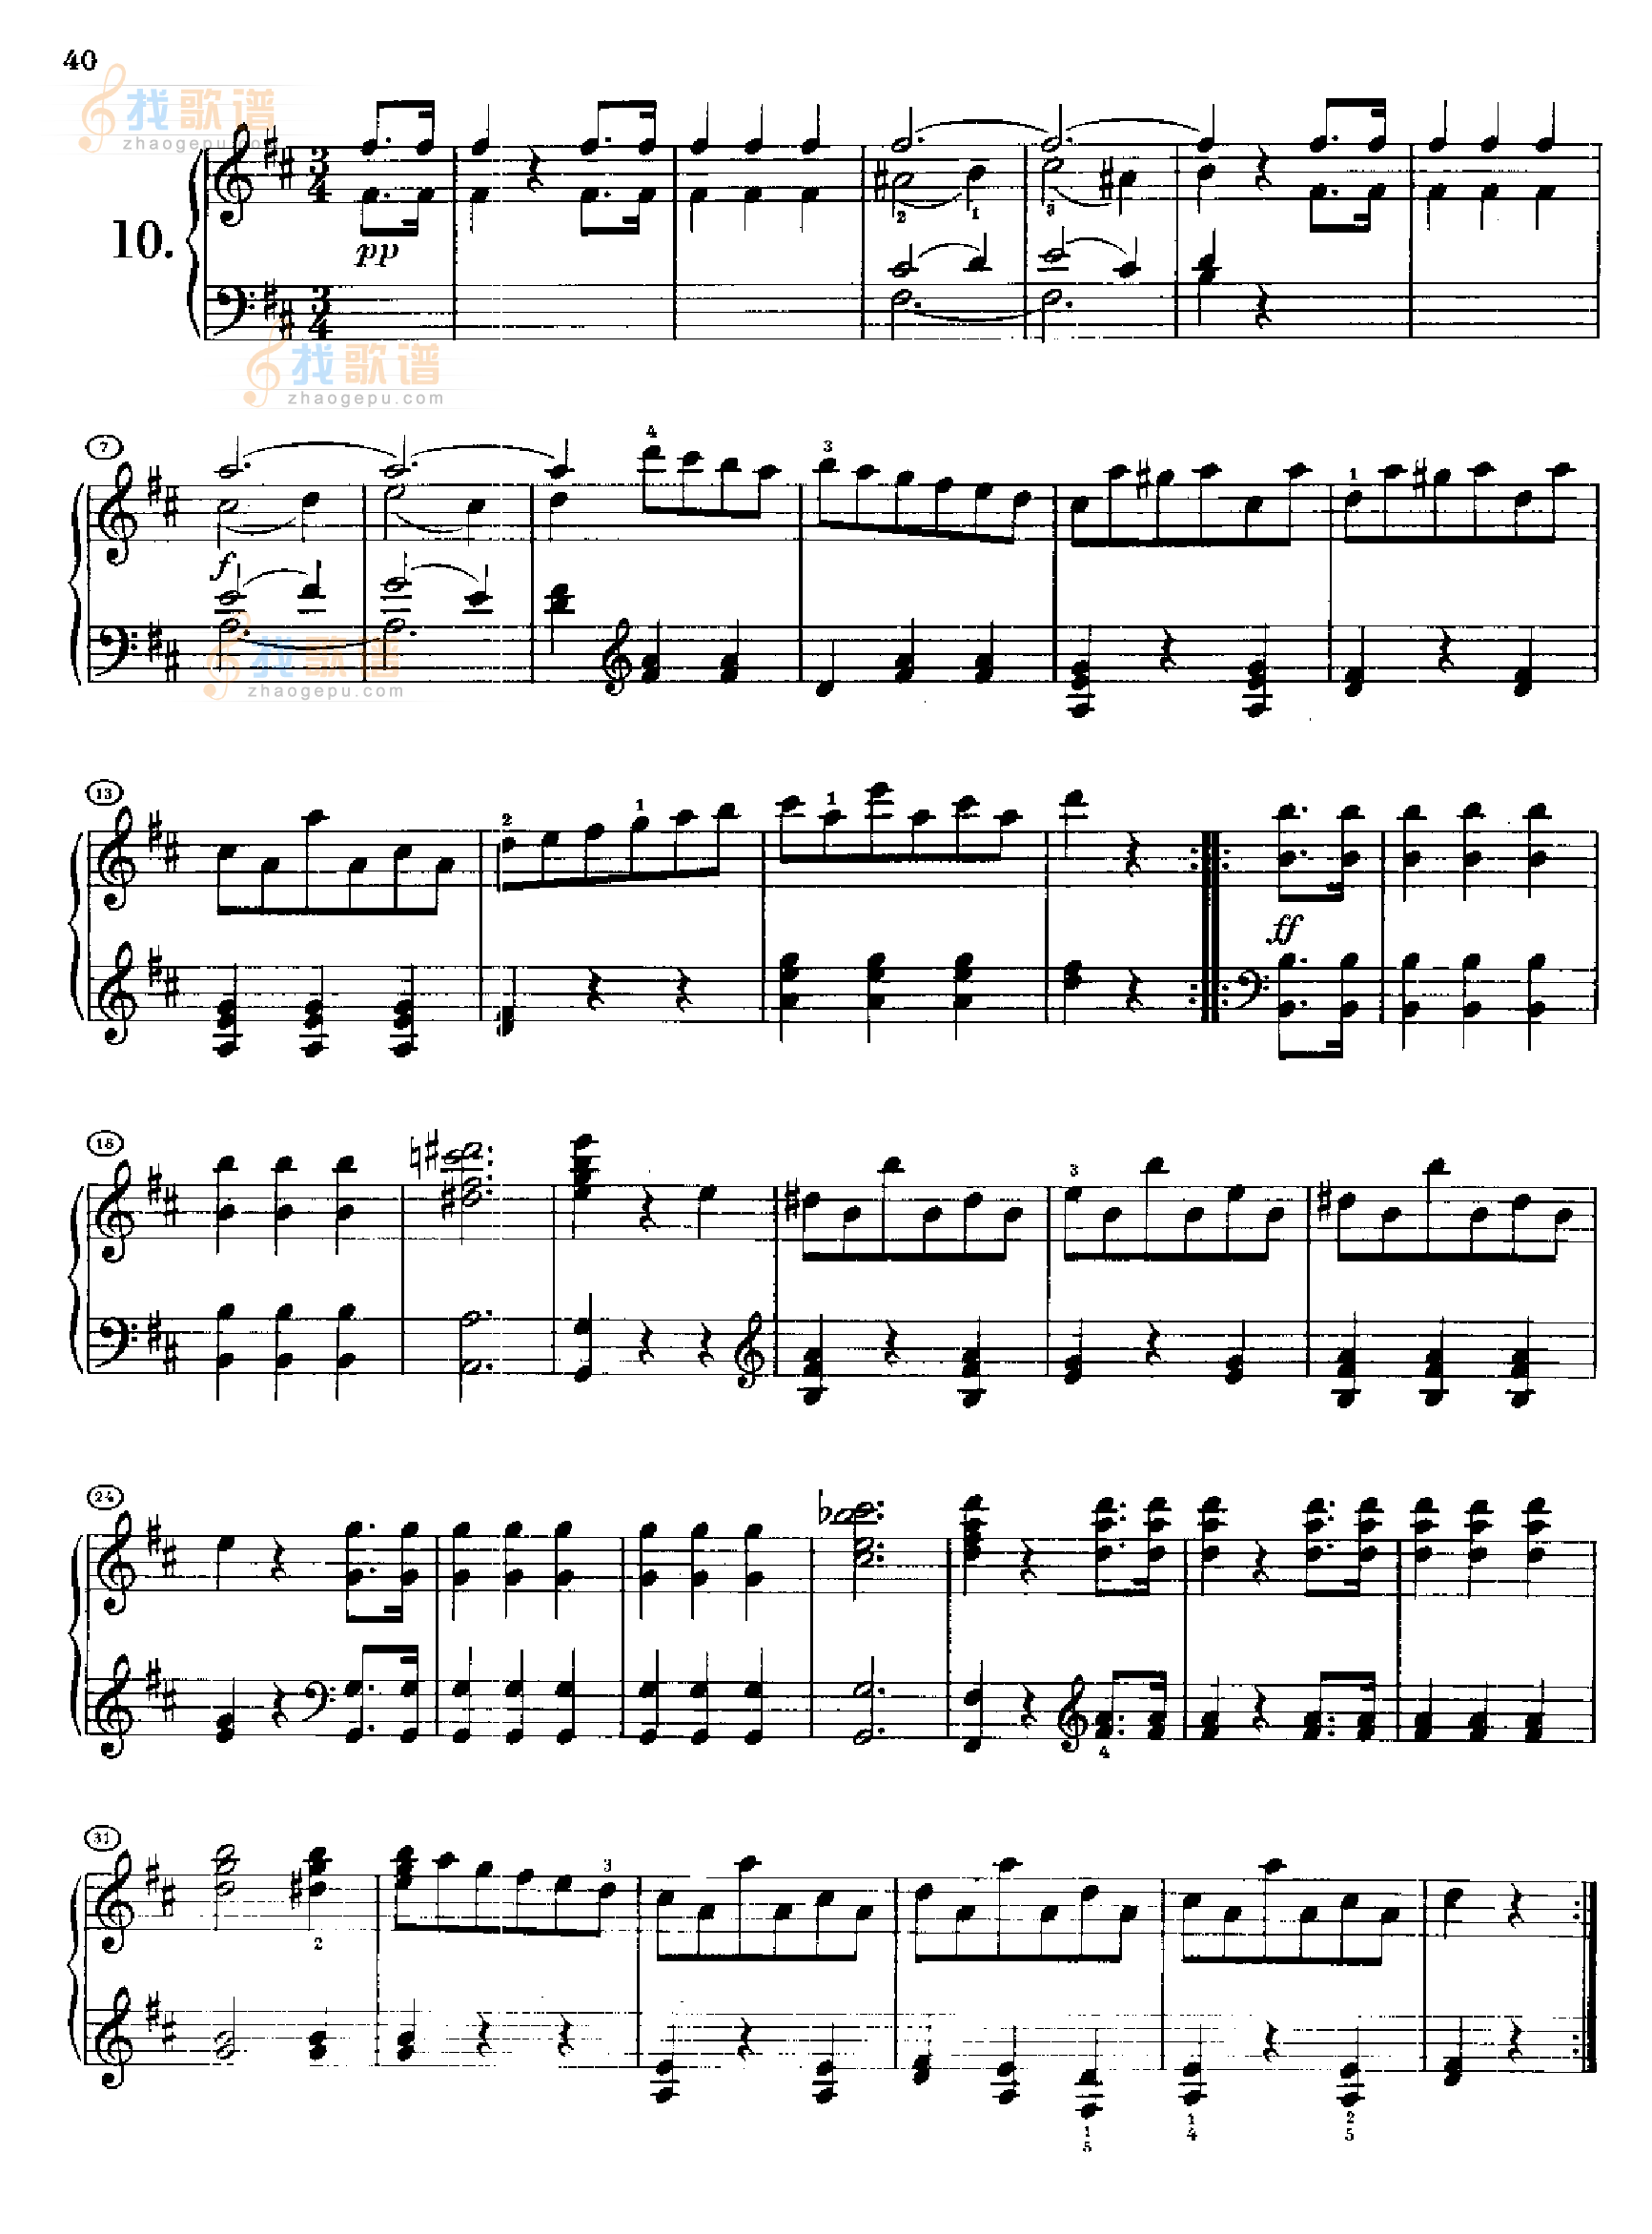 12首维也纳德意志舞曲(约1812年创作)